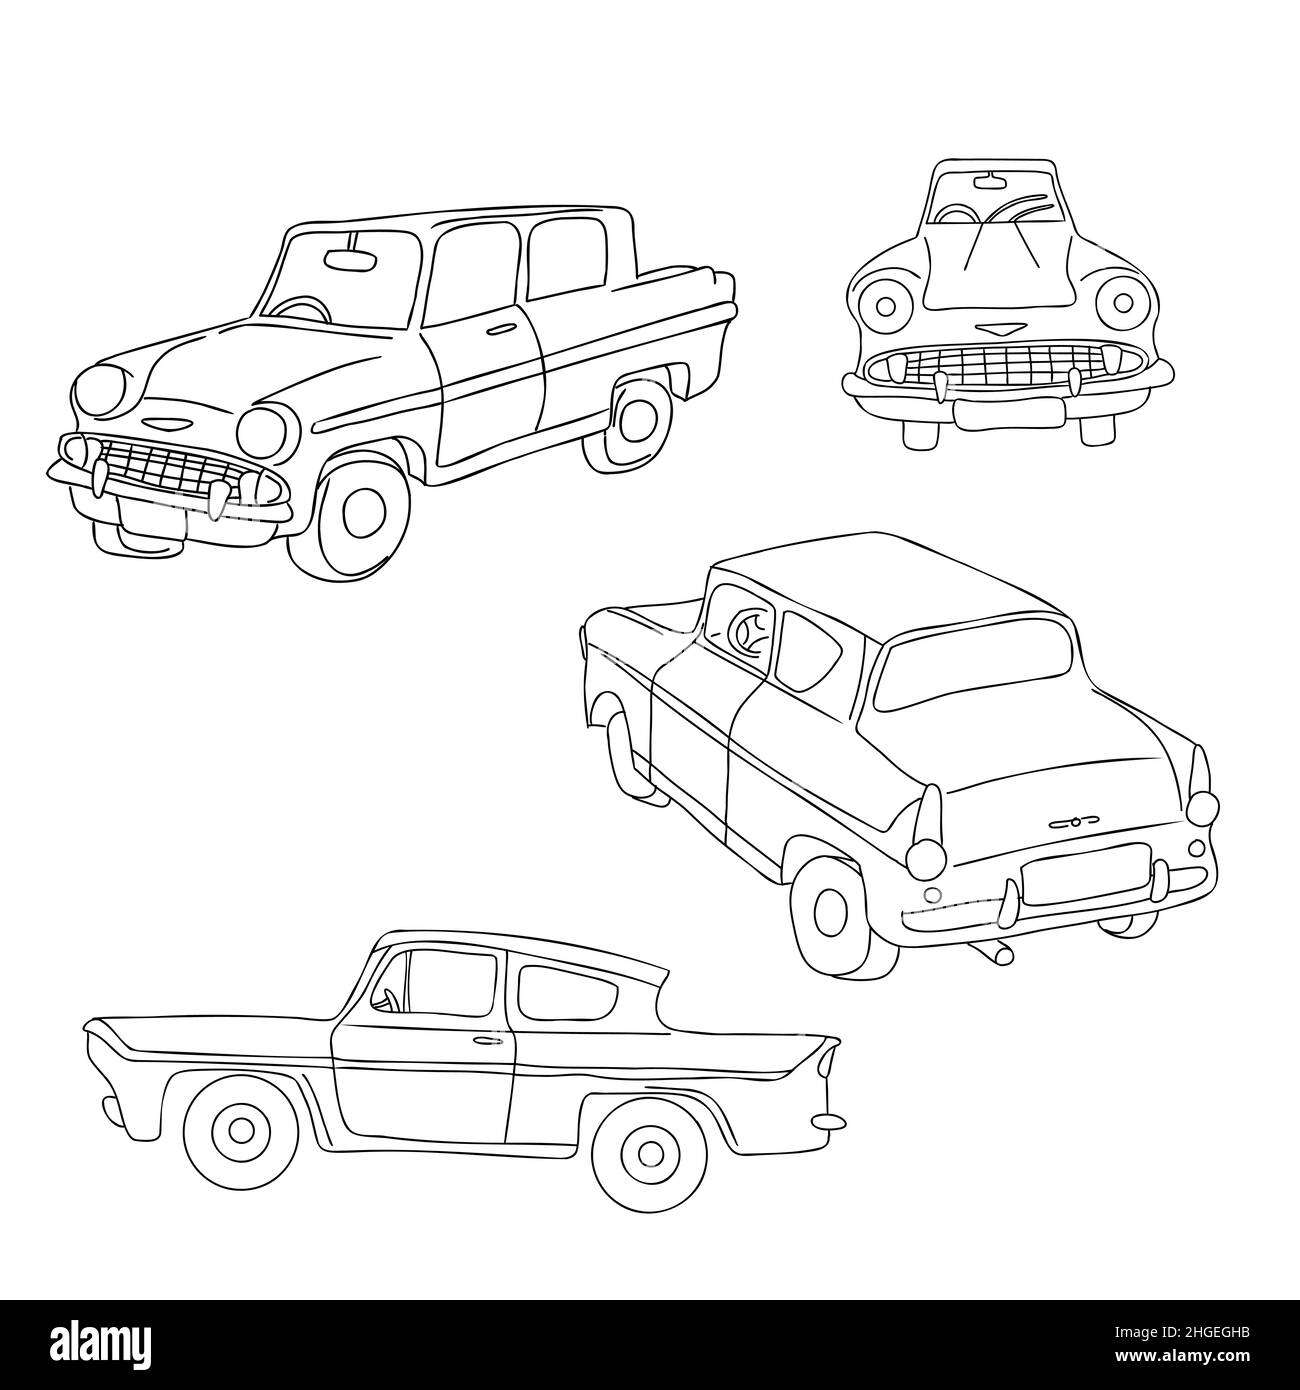 Skizzieren Sie ein handgezeichnetes Retro-Auto in Front-, Seiten- und isometrischen Ansichten. Set mit Vintage-Silhouetten. Vektorgrafik Stock Vektor